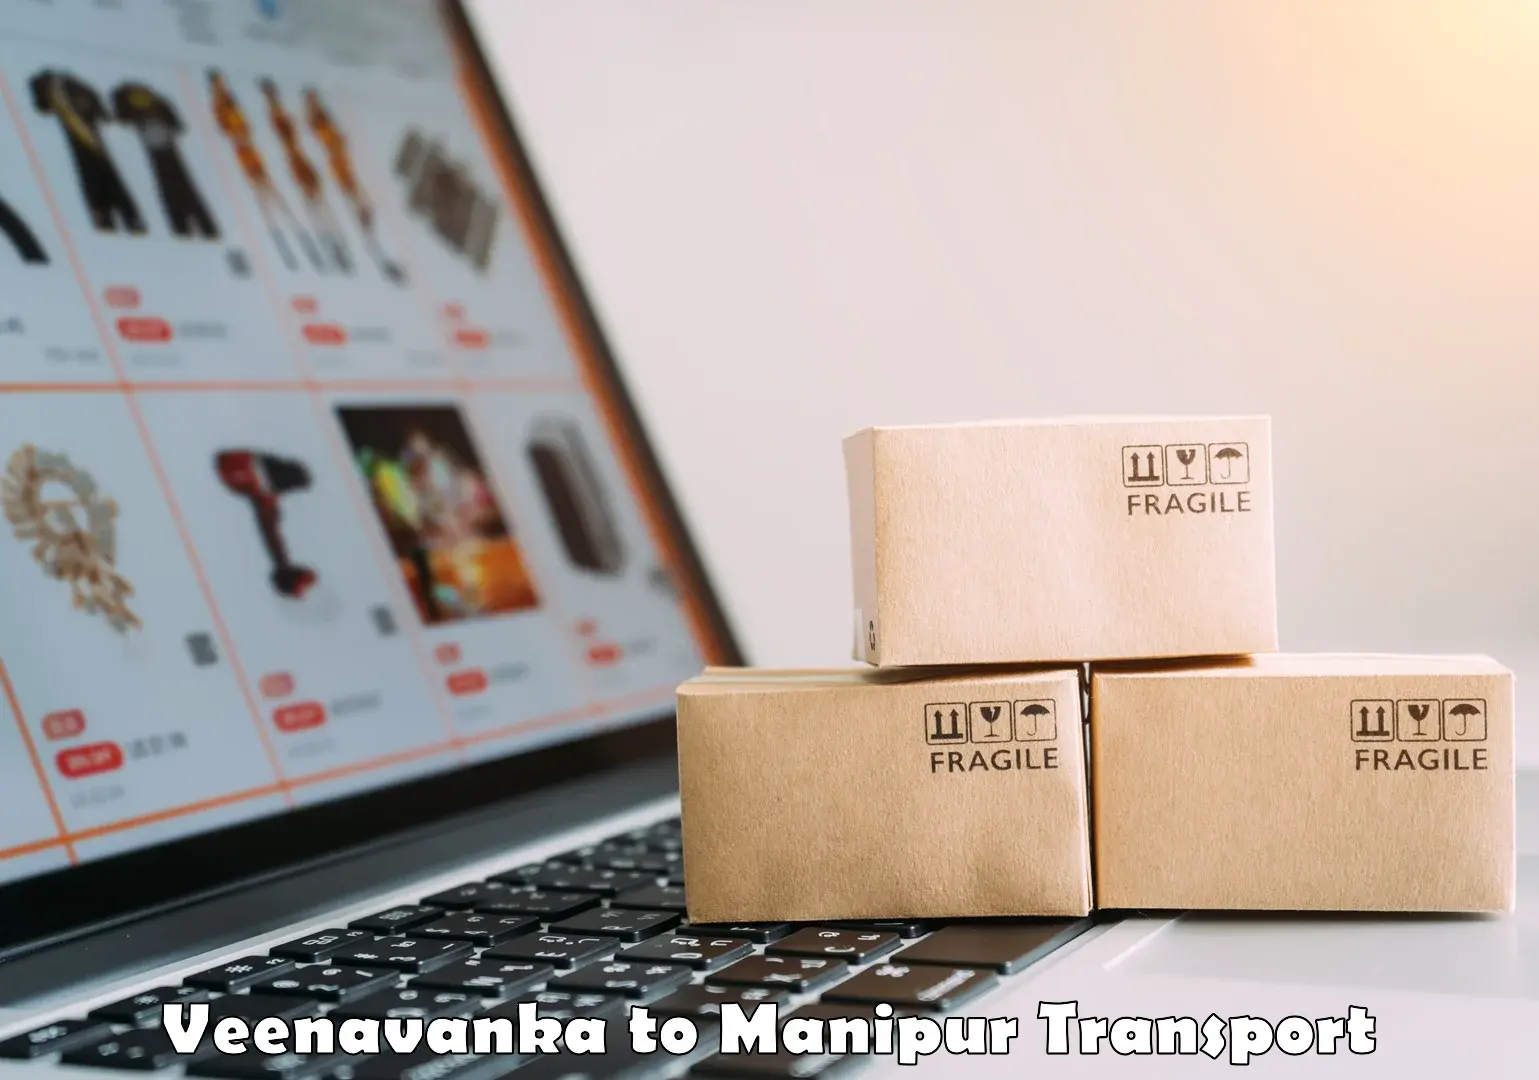 Online transport booking Veenavanka to Manipur